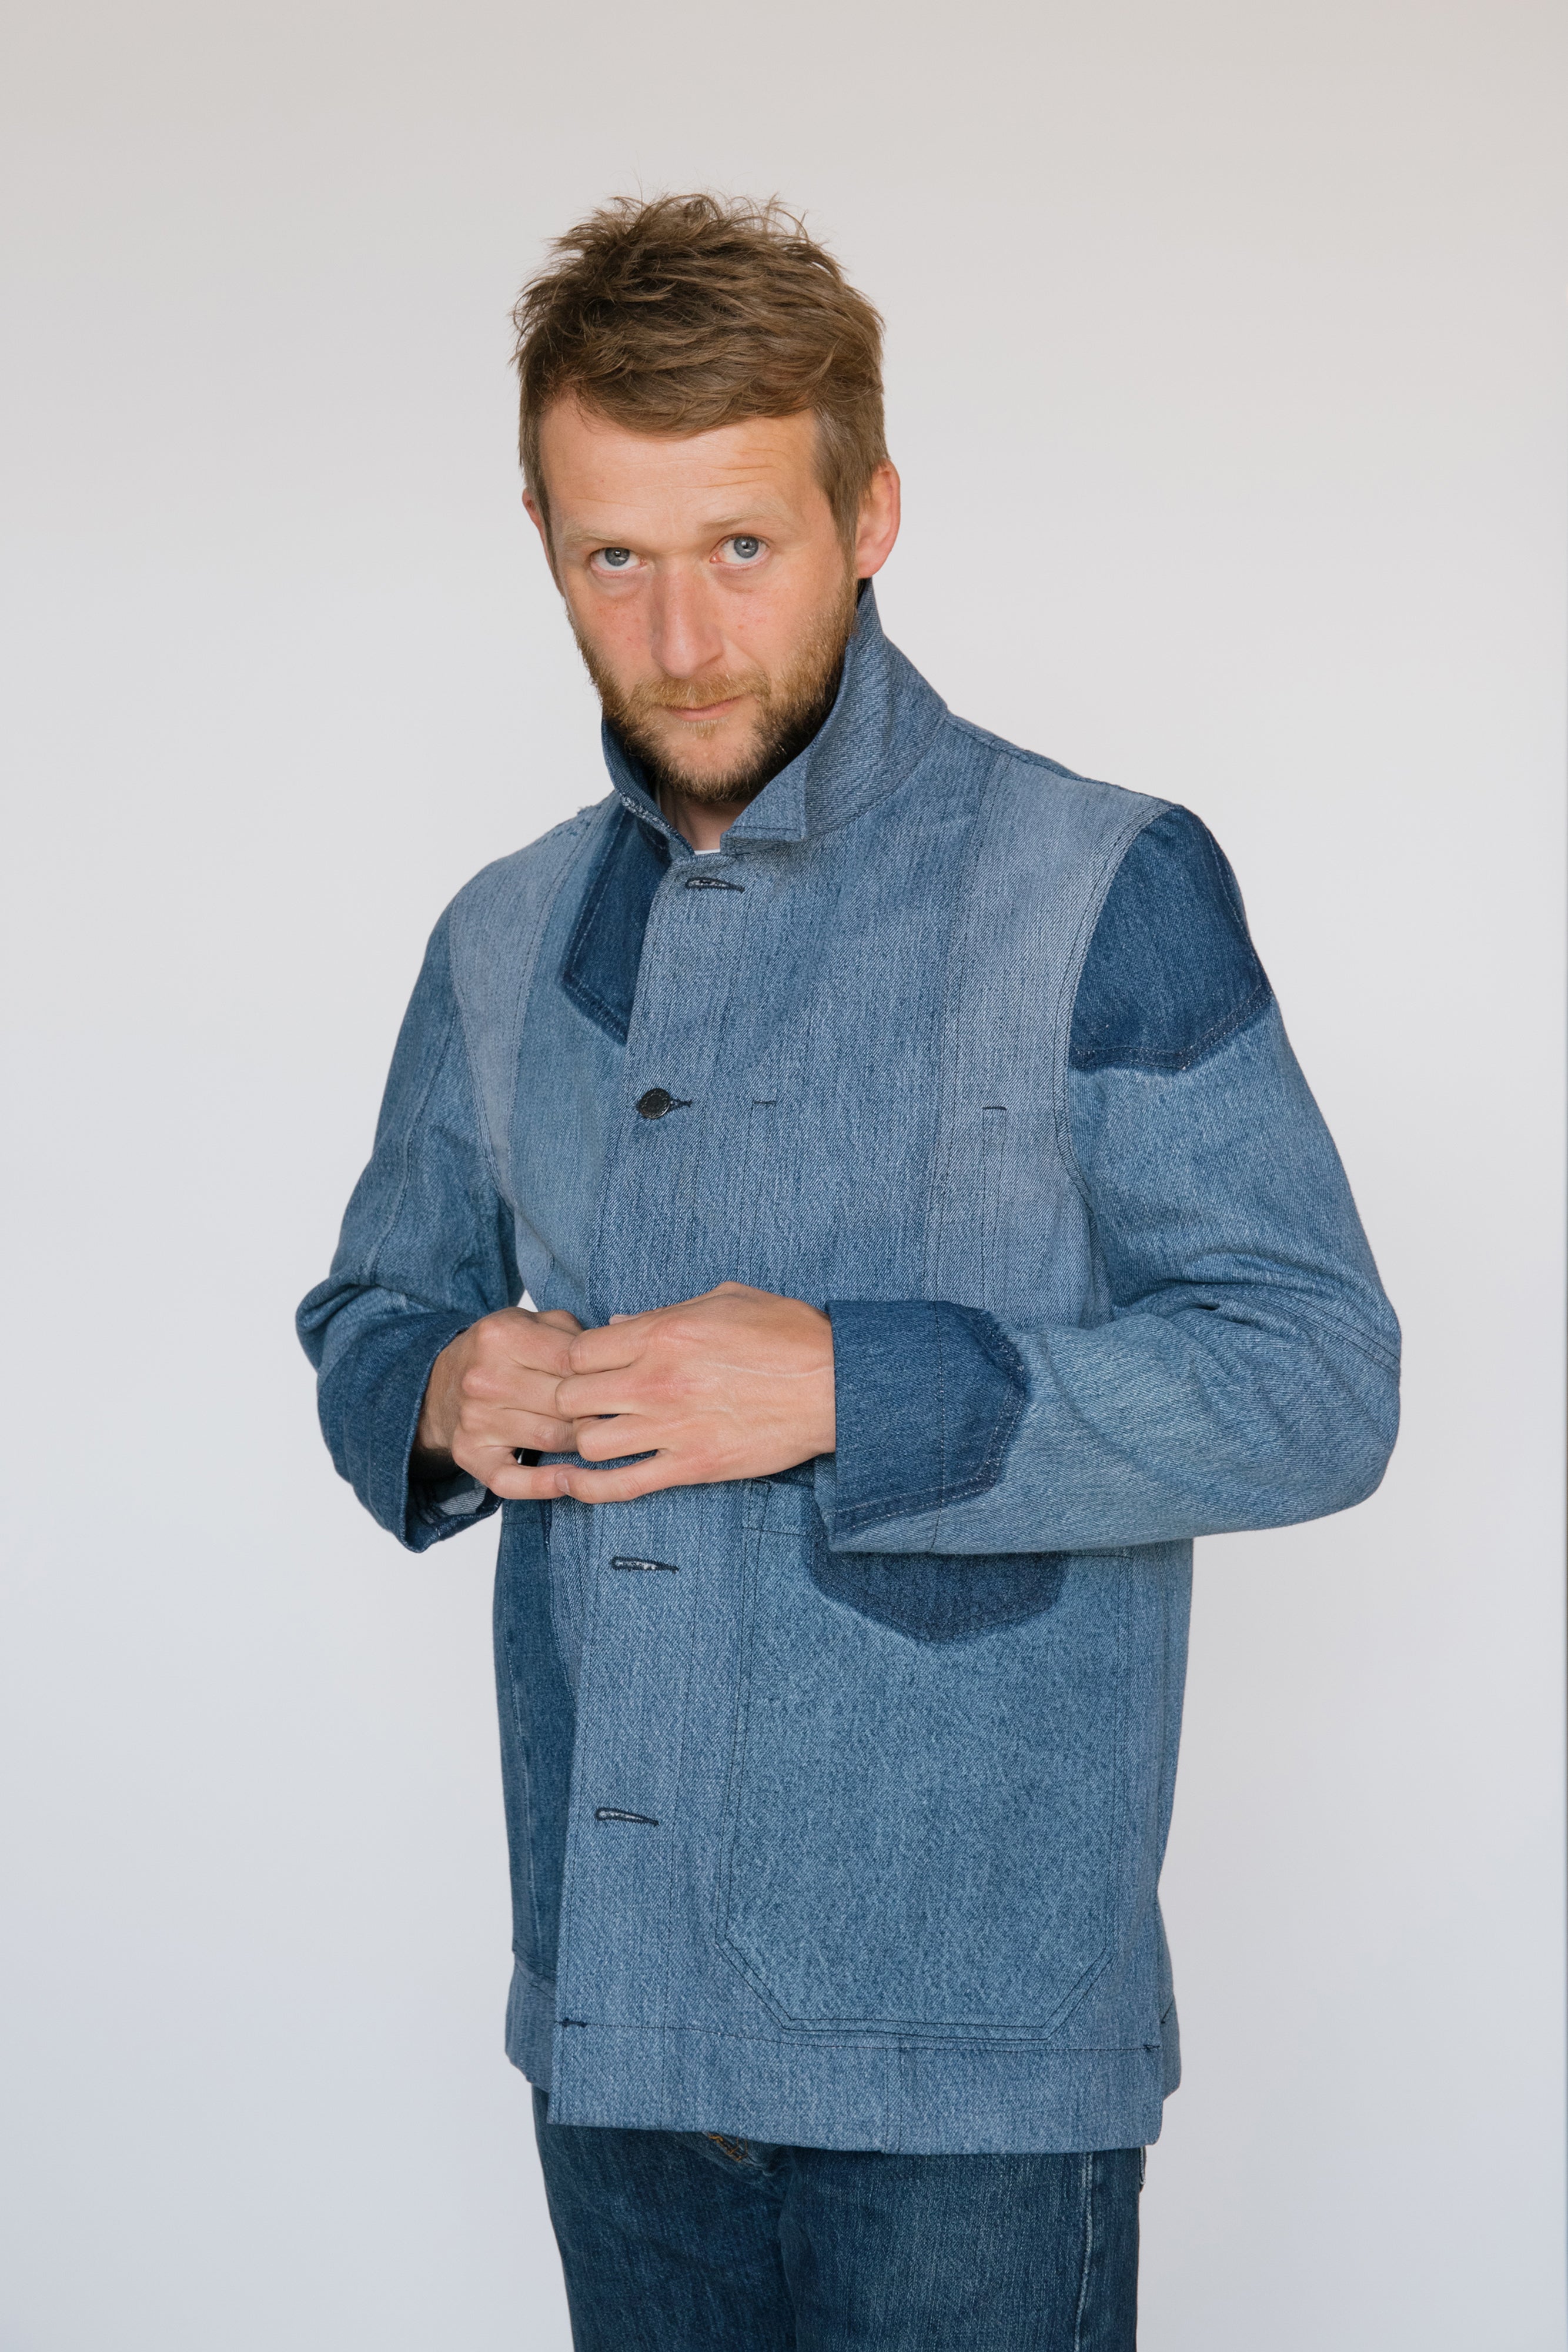 Elliston Jacket in Patchwork Denim - ReJean Denim - zero waste - circular fashion brand 